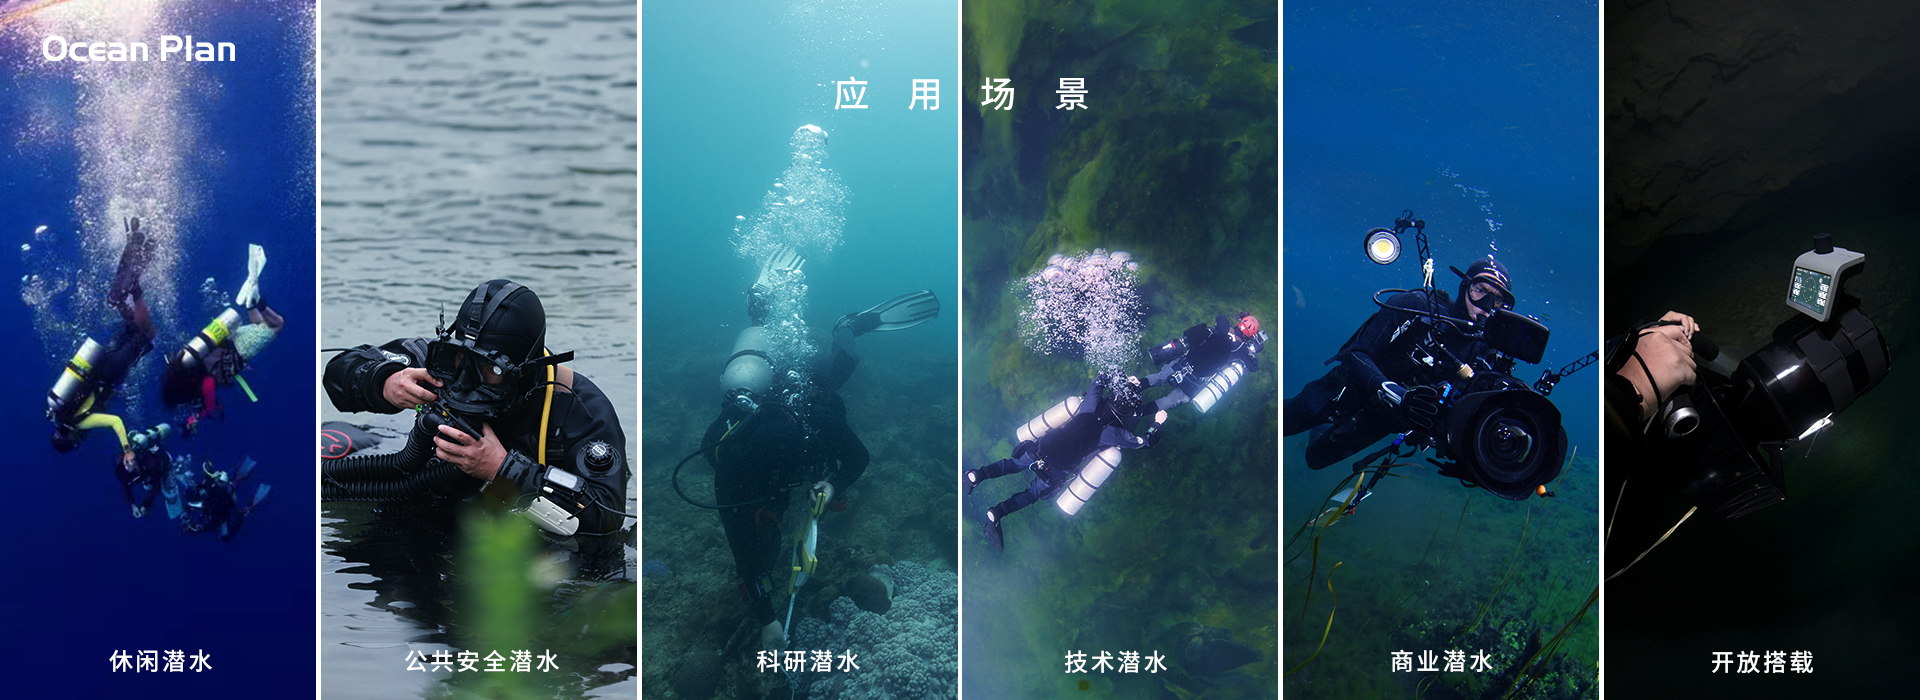 潜水员新装备，集水下定位、水下通信为一体